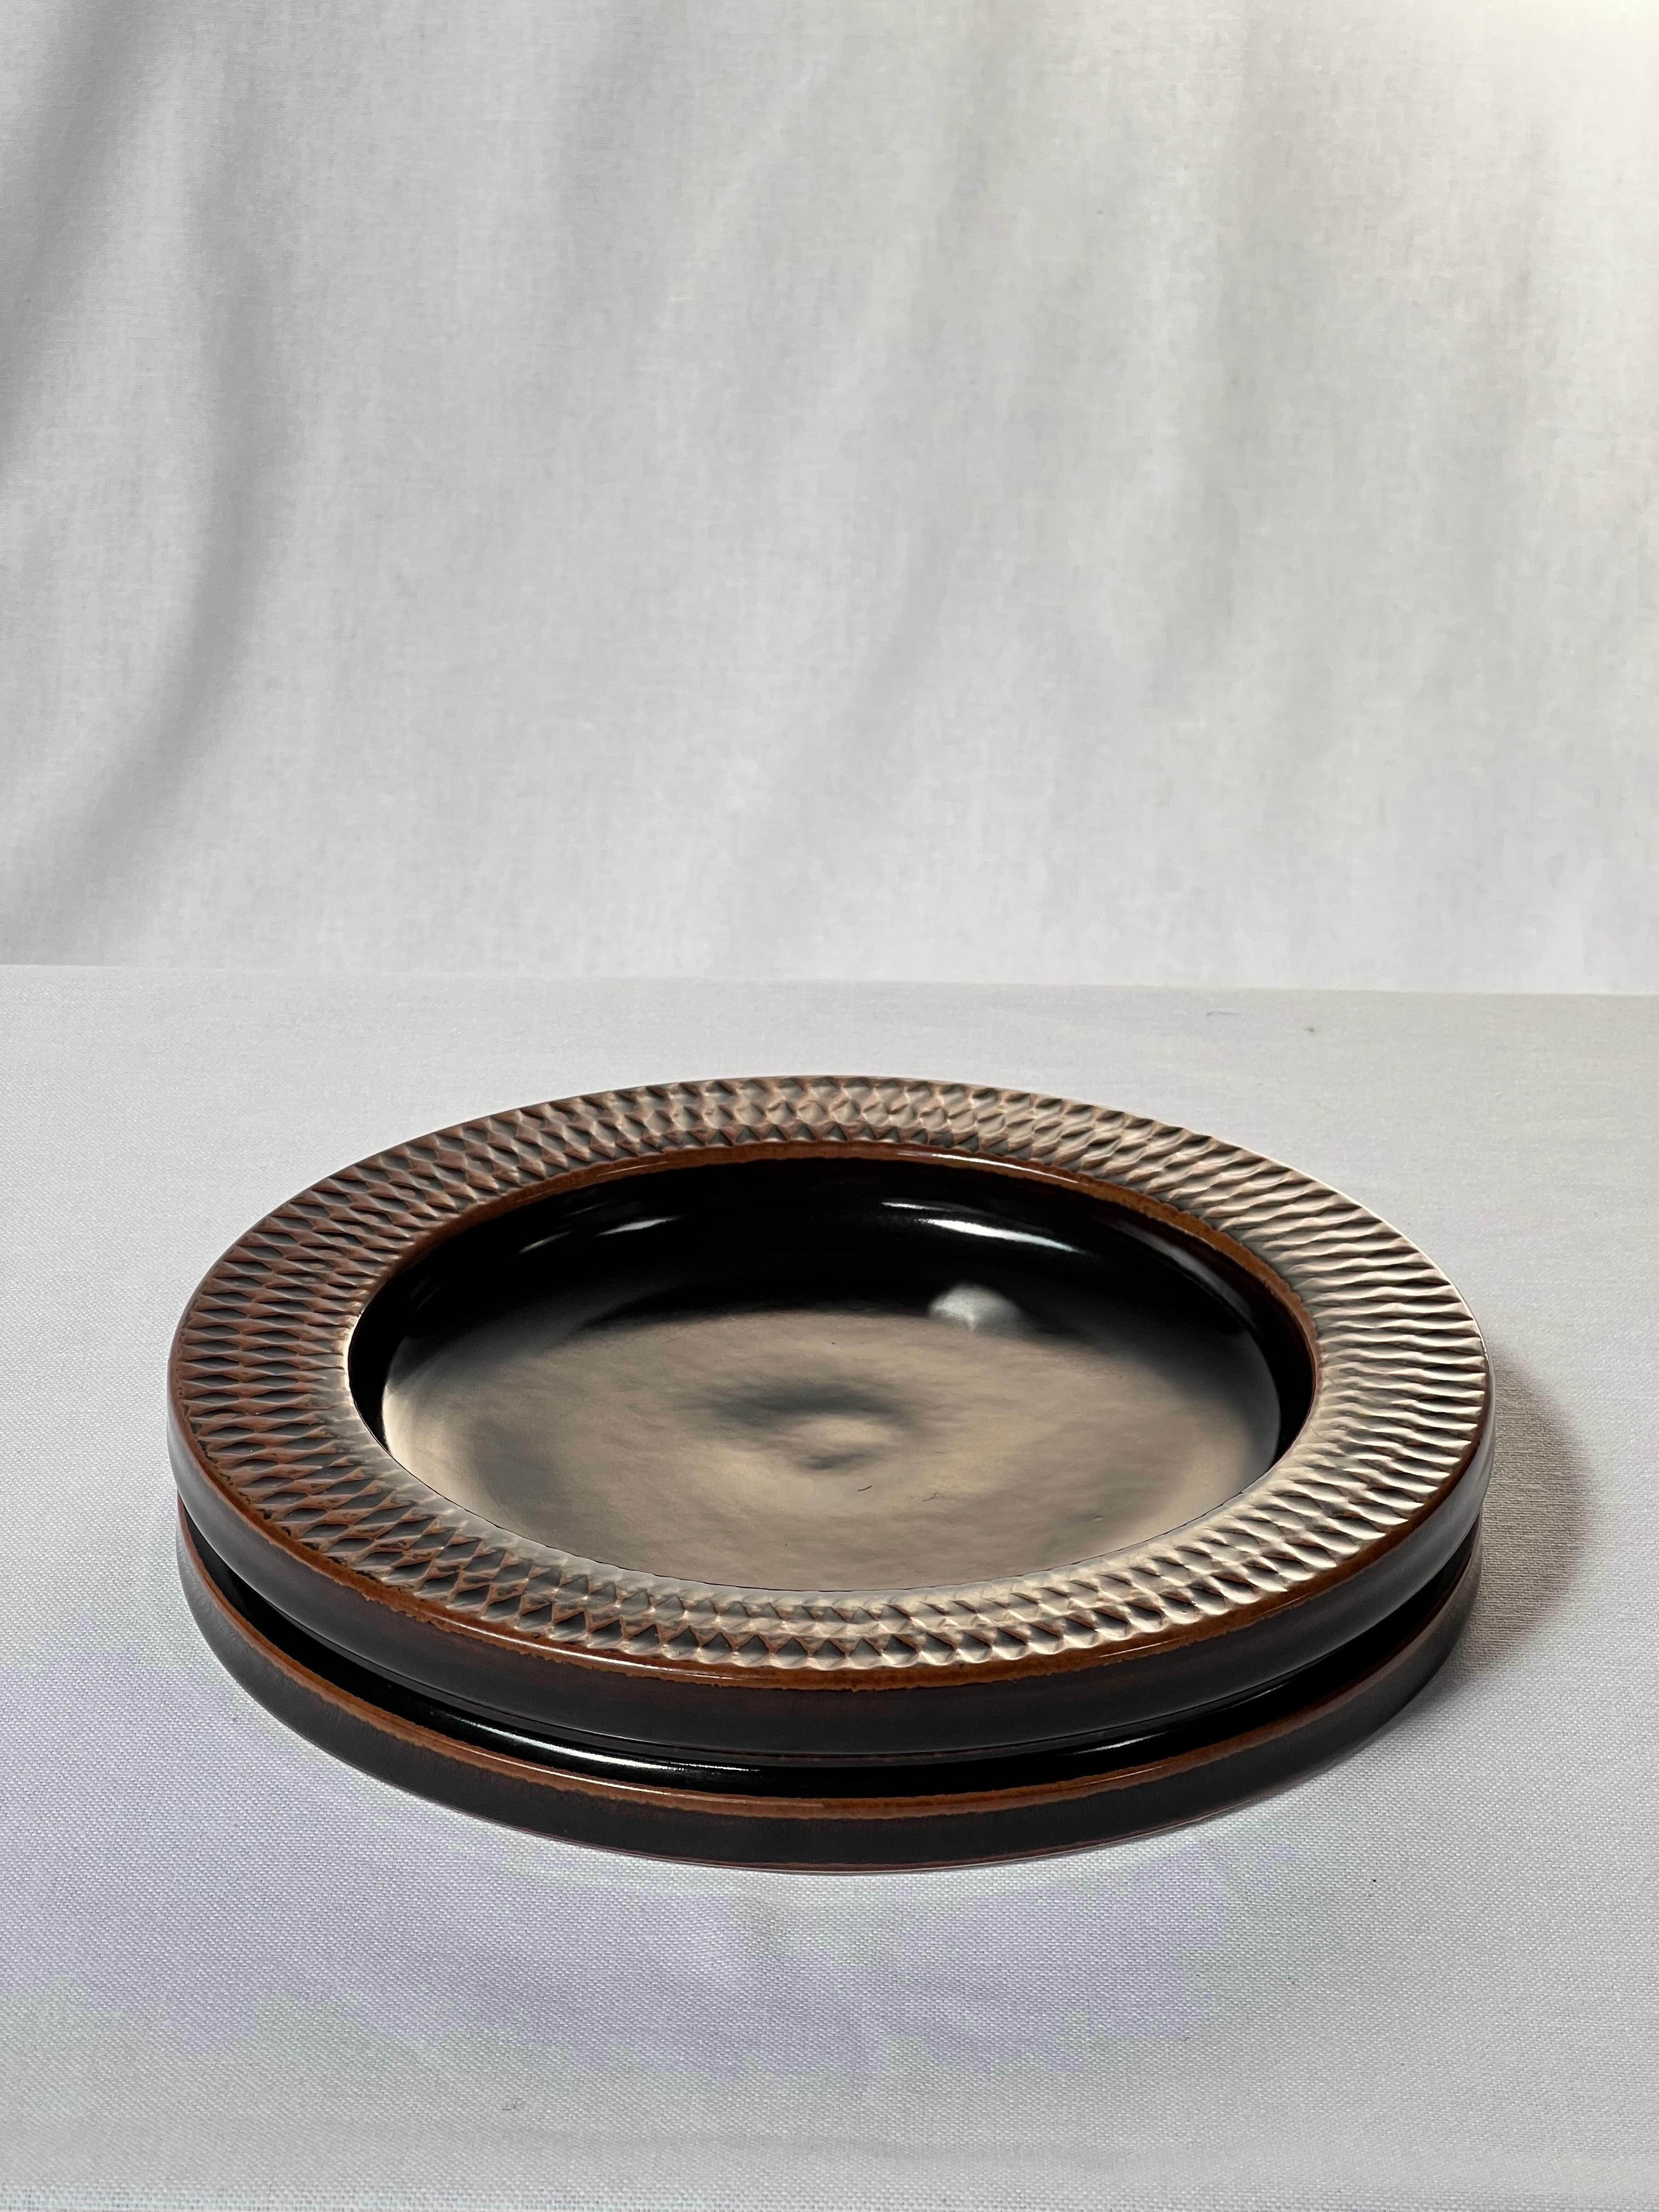 Braun glasierte Schale / vide poche des schwedischen Keramikmeisters Stig Lindberg. Von hellbraun an den Rändern bis dunkelschwarz. Es handelt sich um die japanische Tenmoku-Glasur, die auch von den alten Chinesen verwendet wurde.  Von Hand